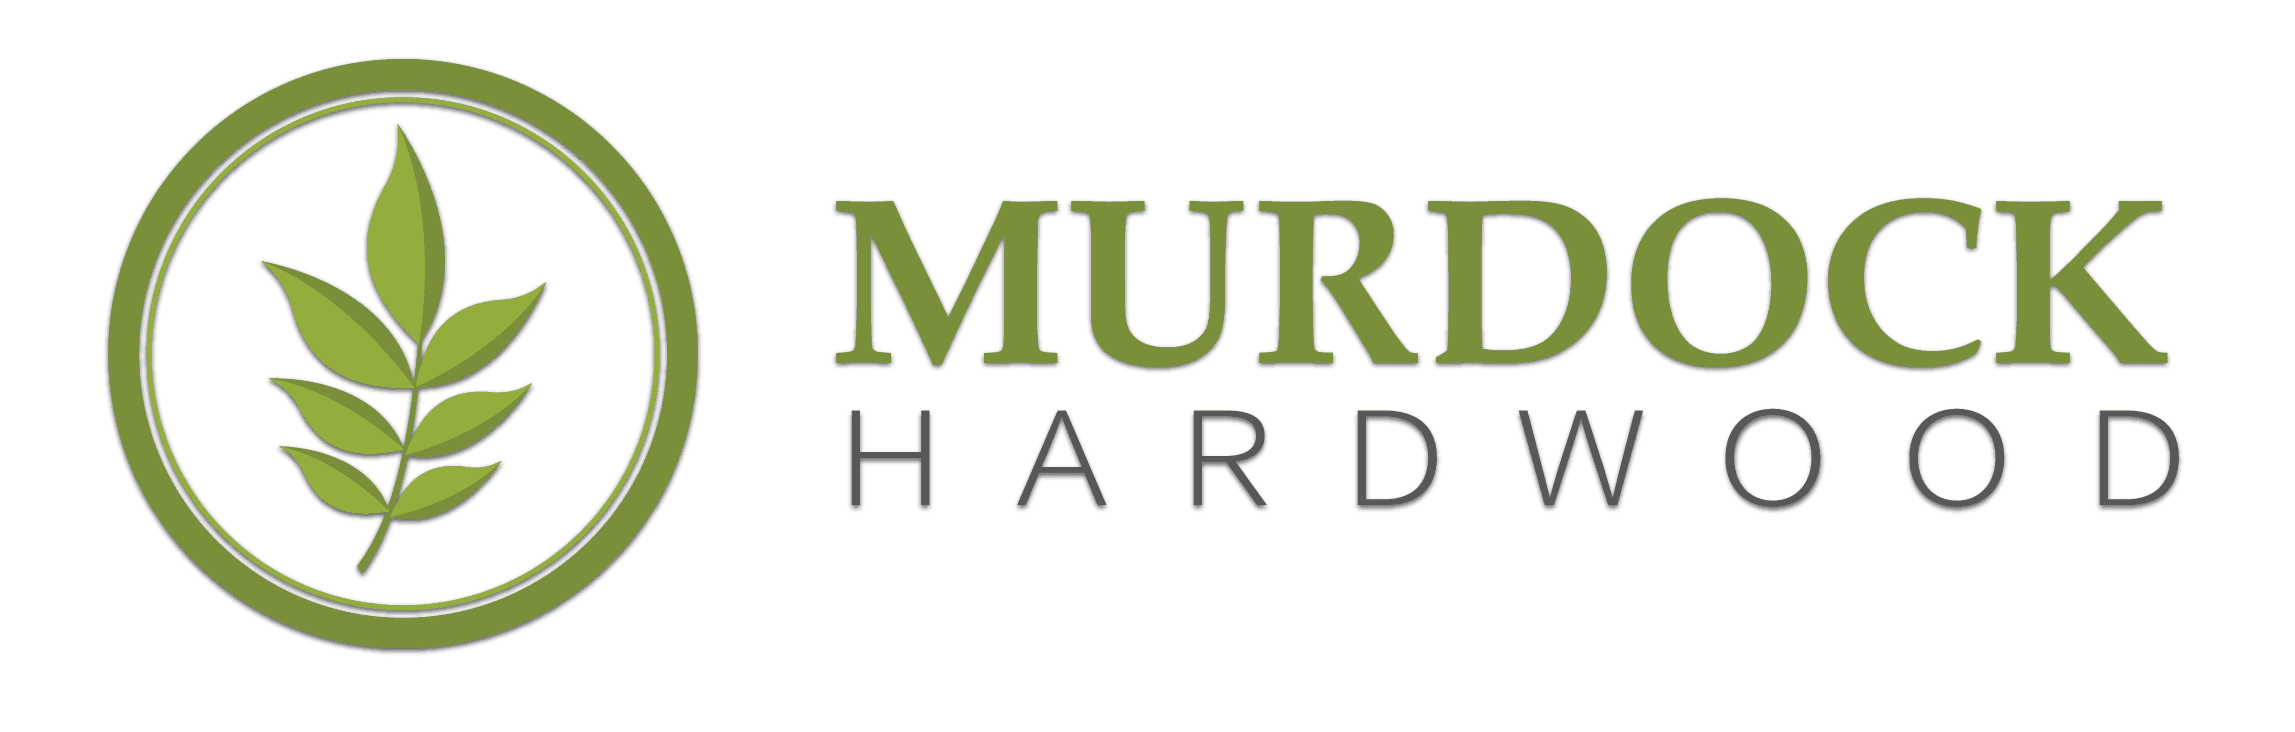 Murdock Hardwood Industries Limited